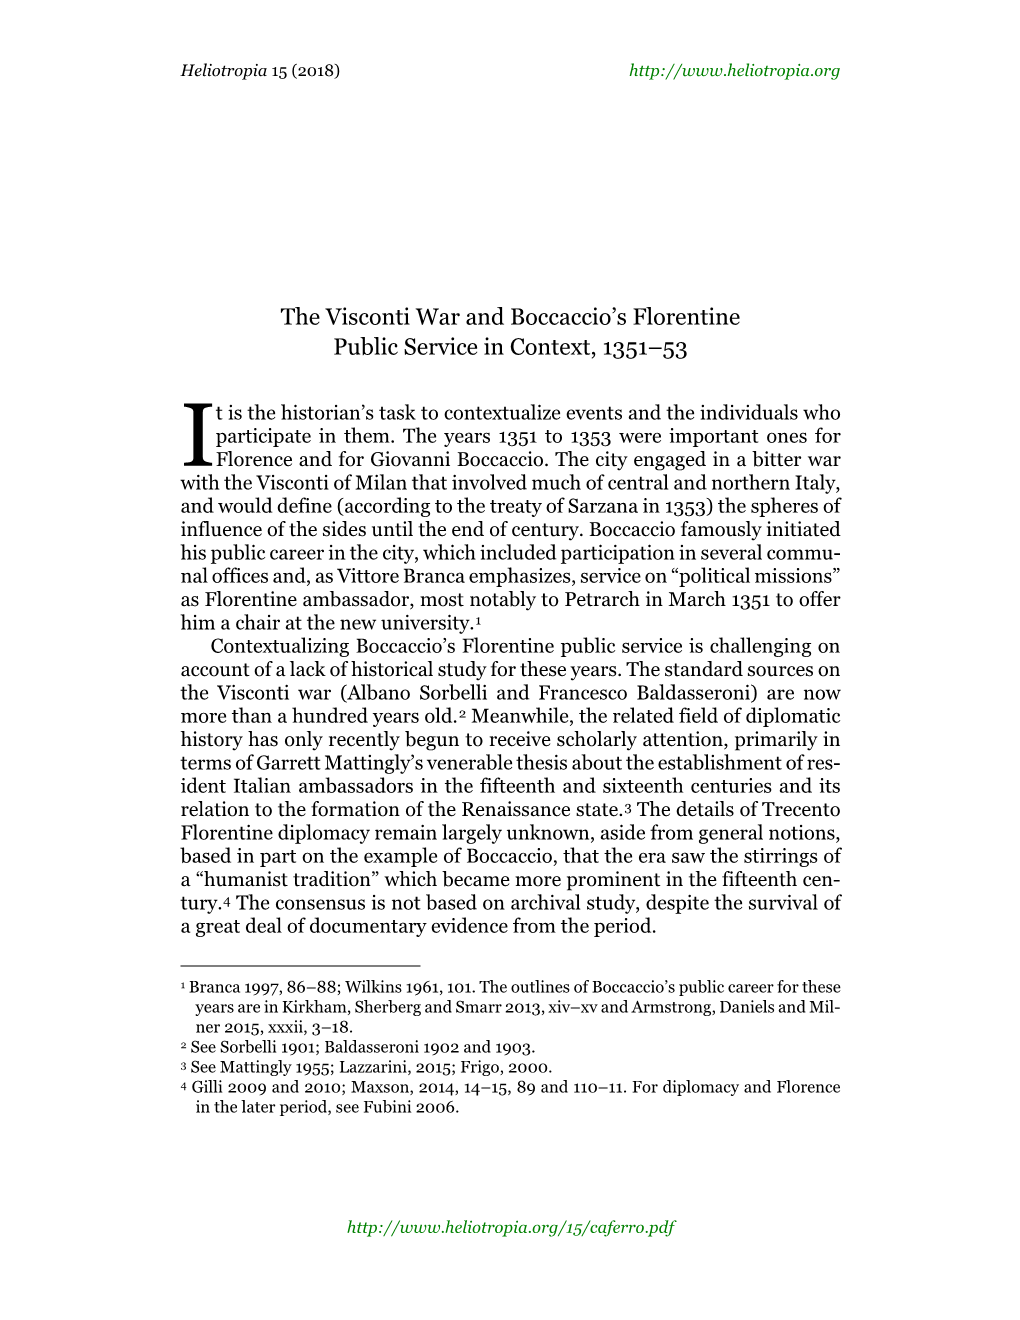 The Visconti War and Boccaccio's Florentine Public Service in Context, 1351-53